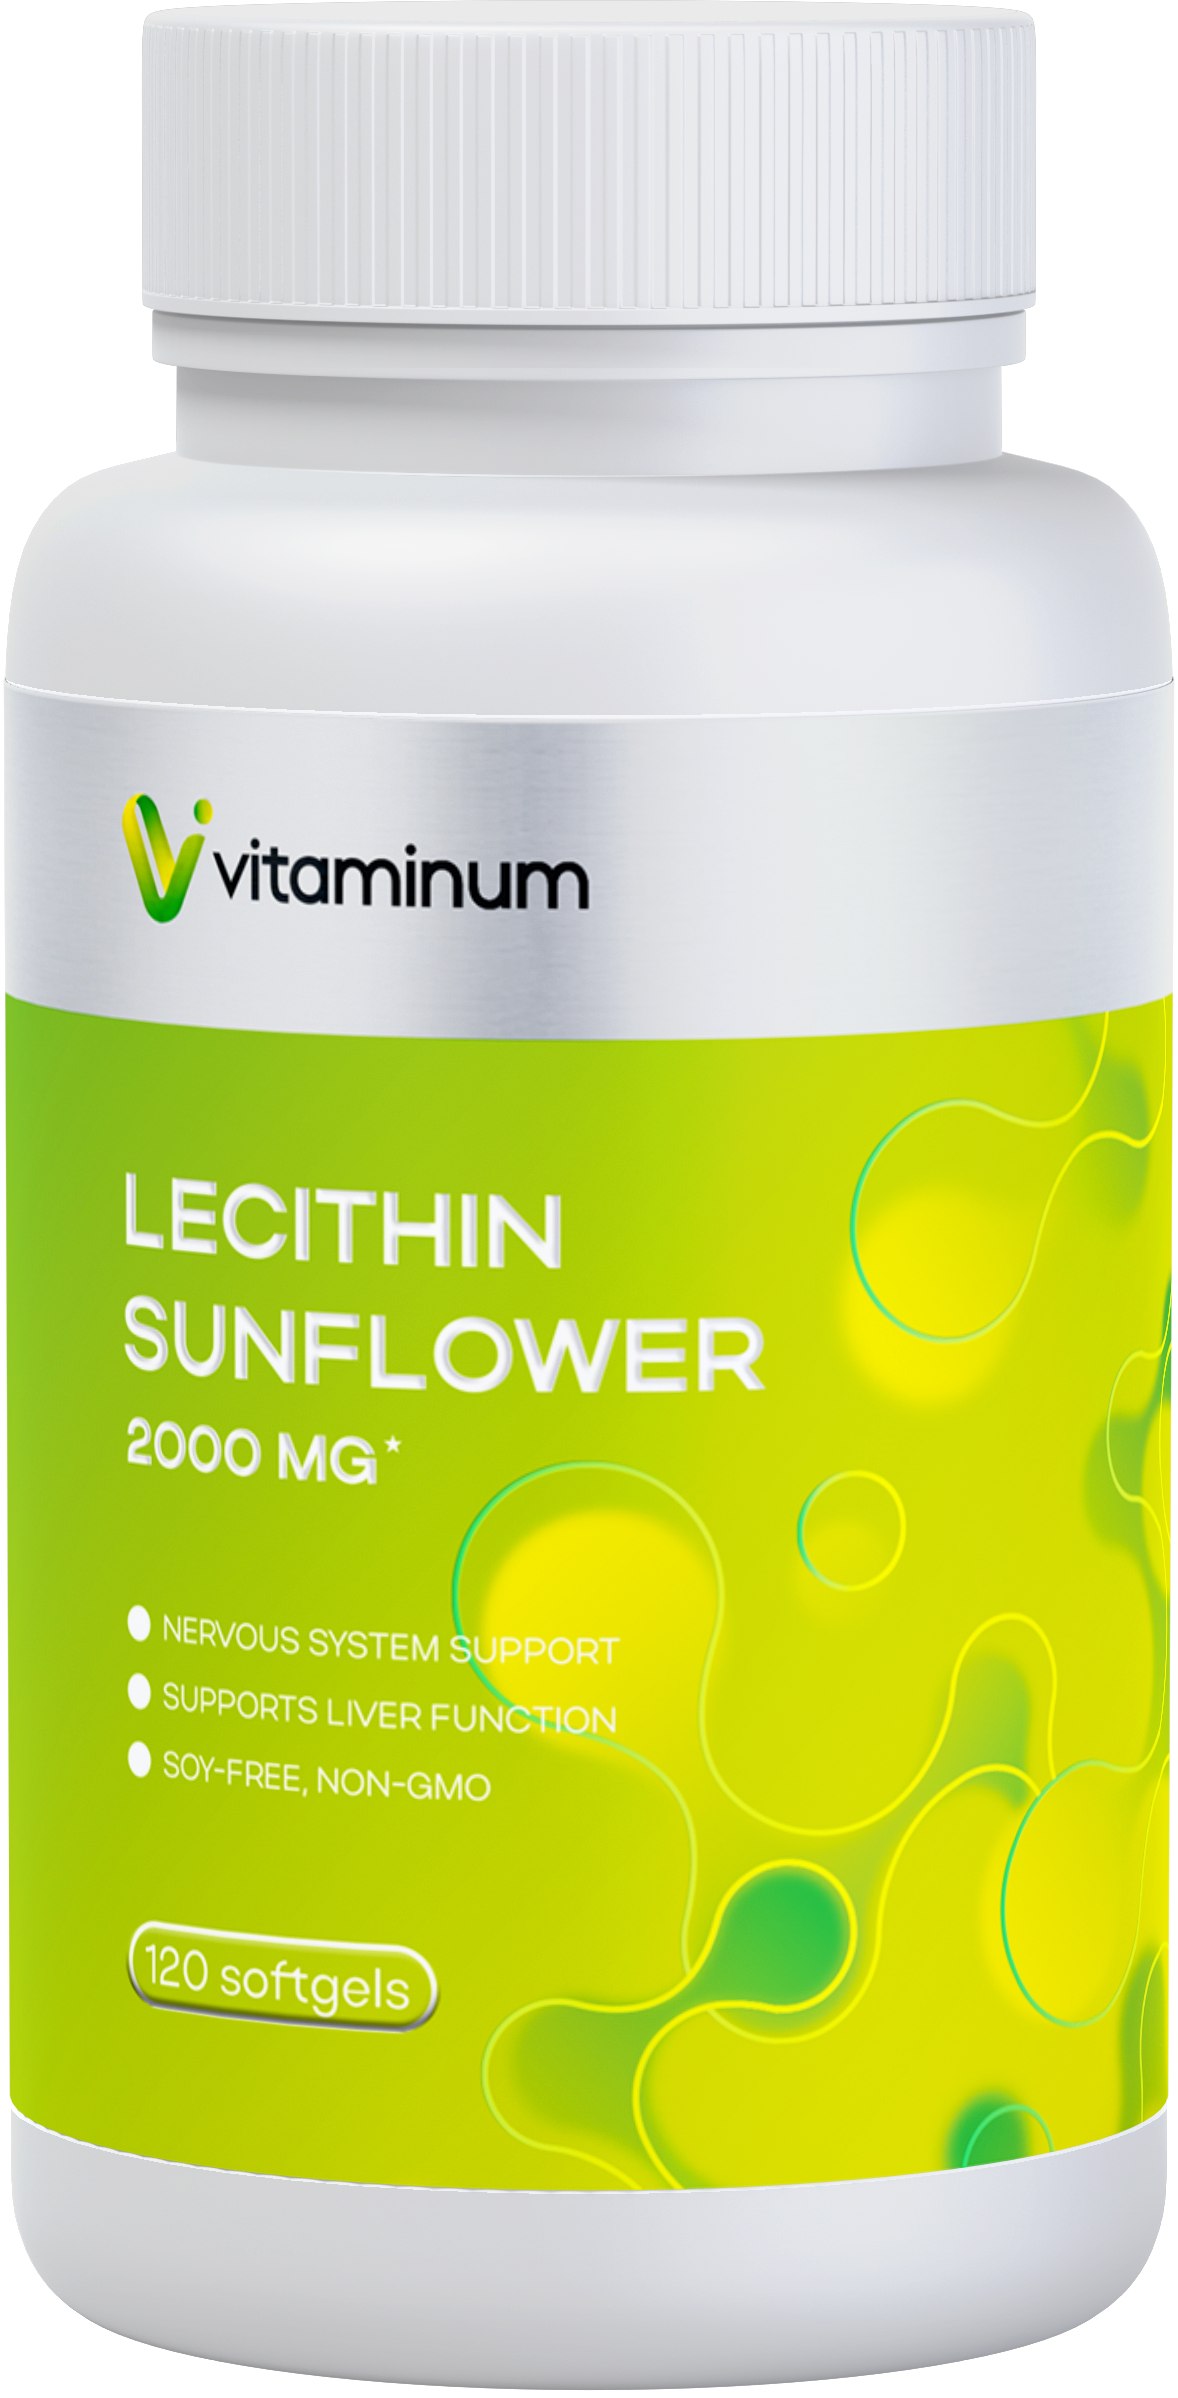 Vitaminum ЛЕЦИТИН ПОДСОЛНЕЧНЫЙ (2000 MG*) 120 капсул 1500 мг